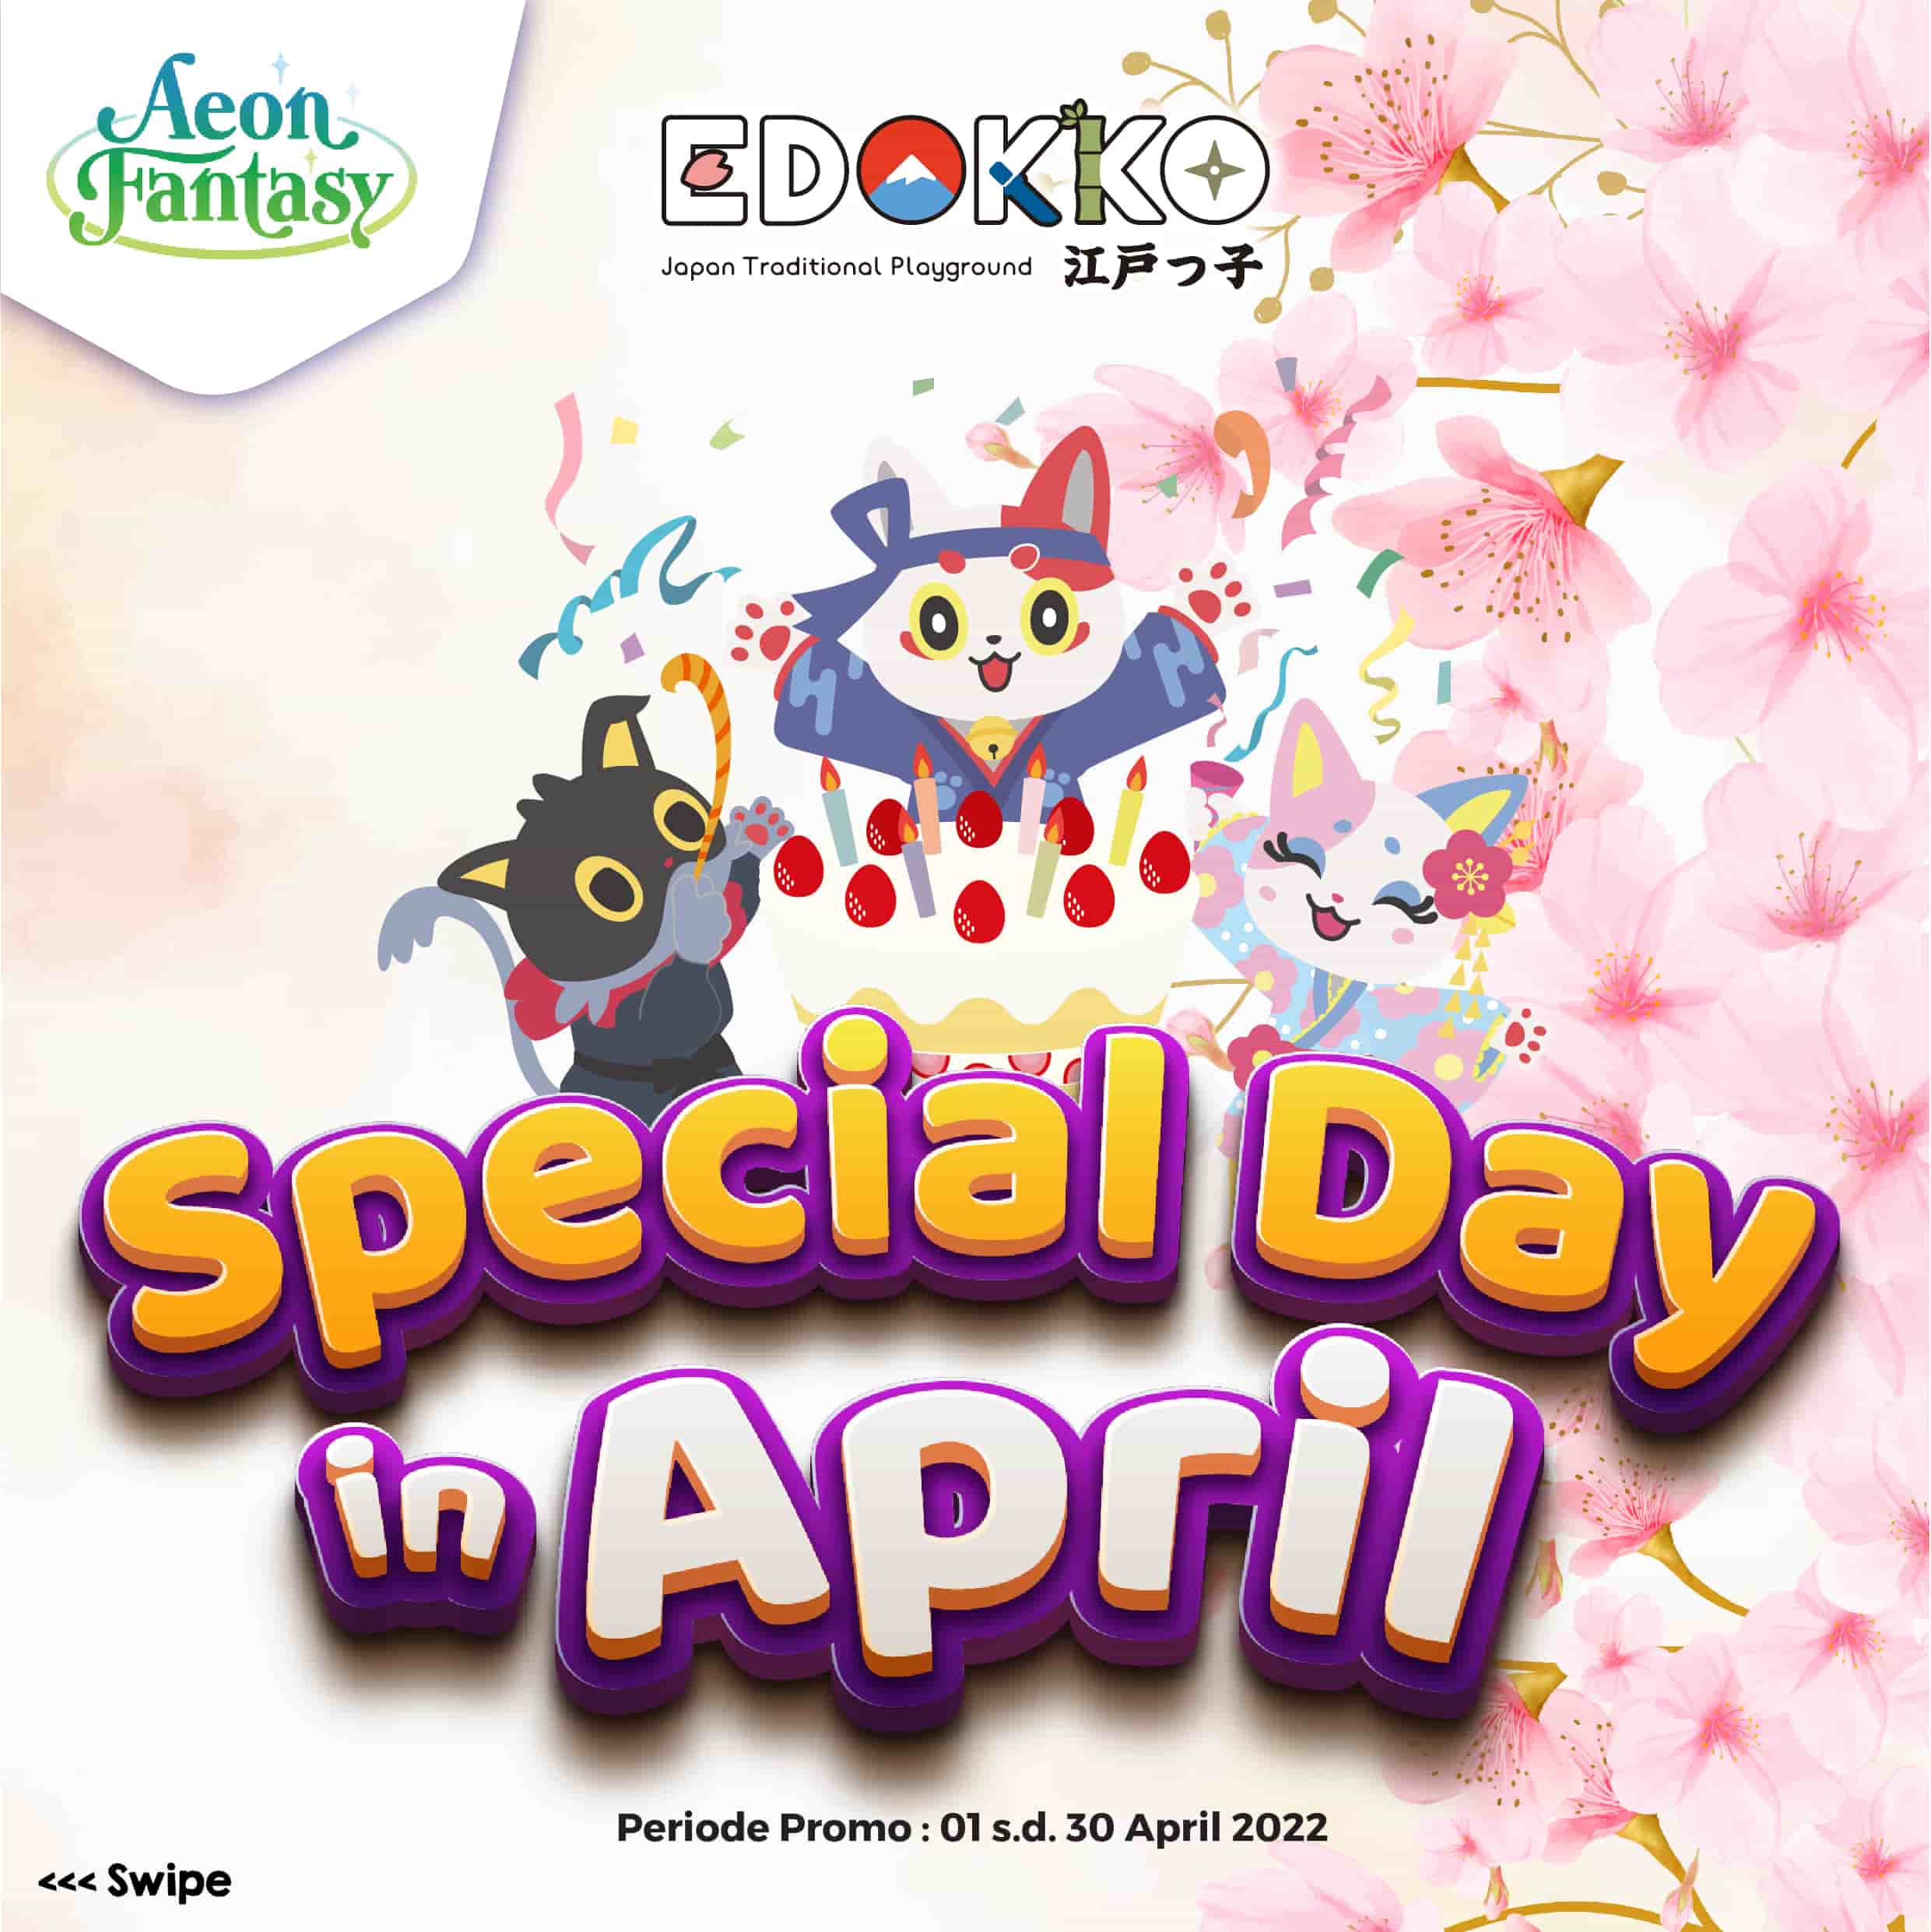 Edokko Special Day in April